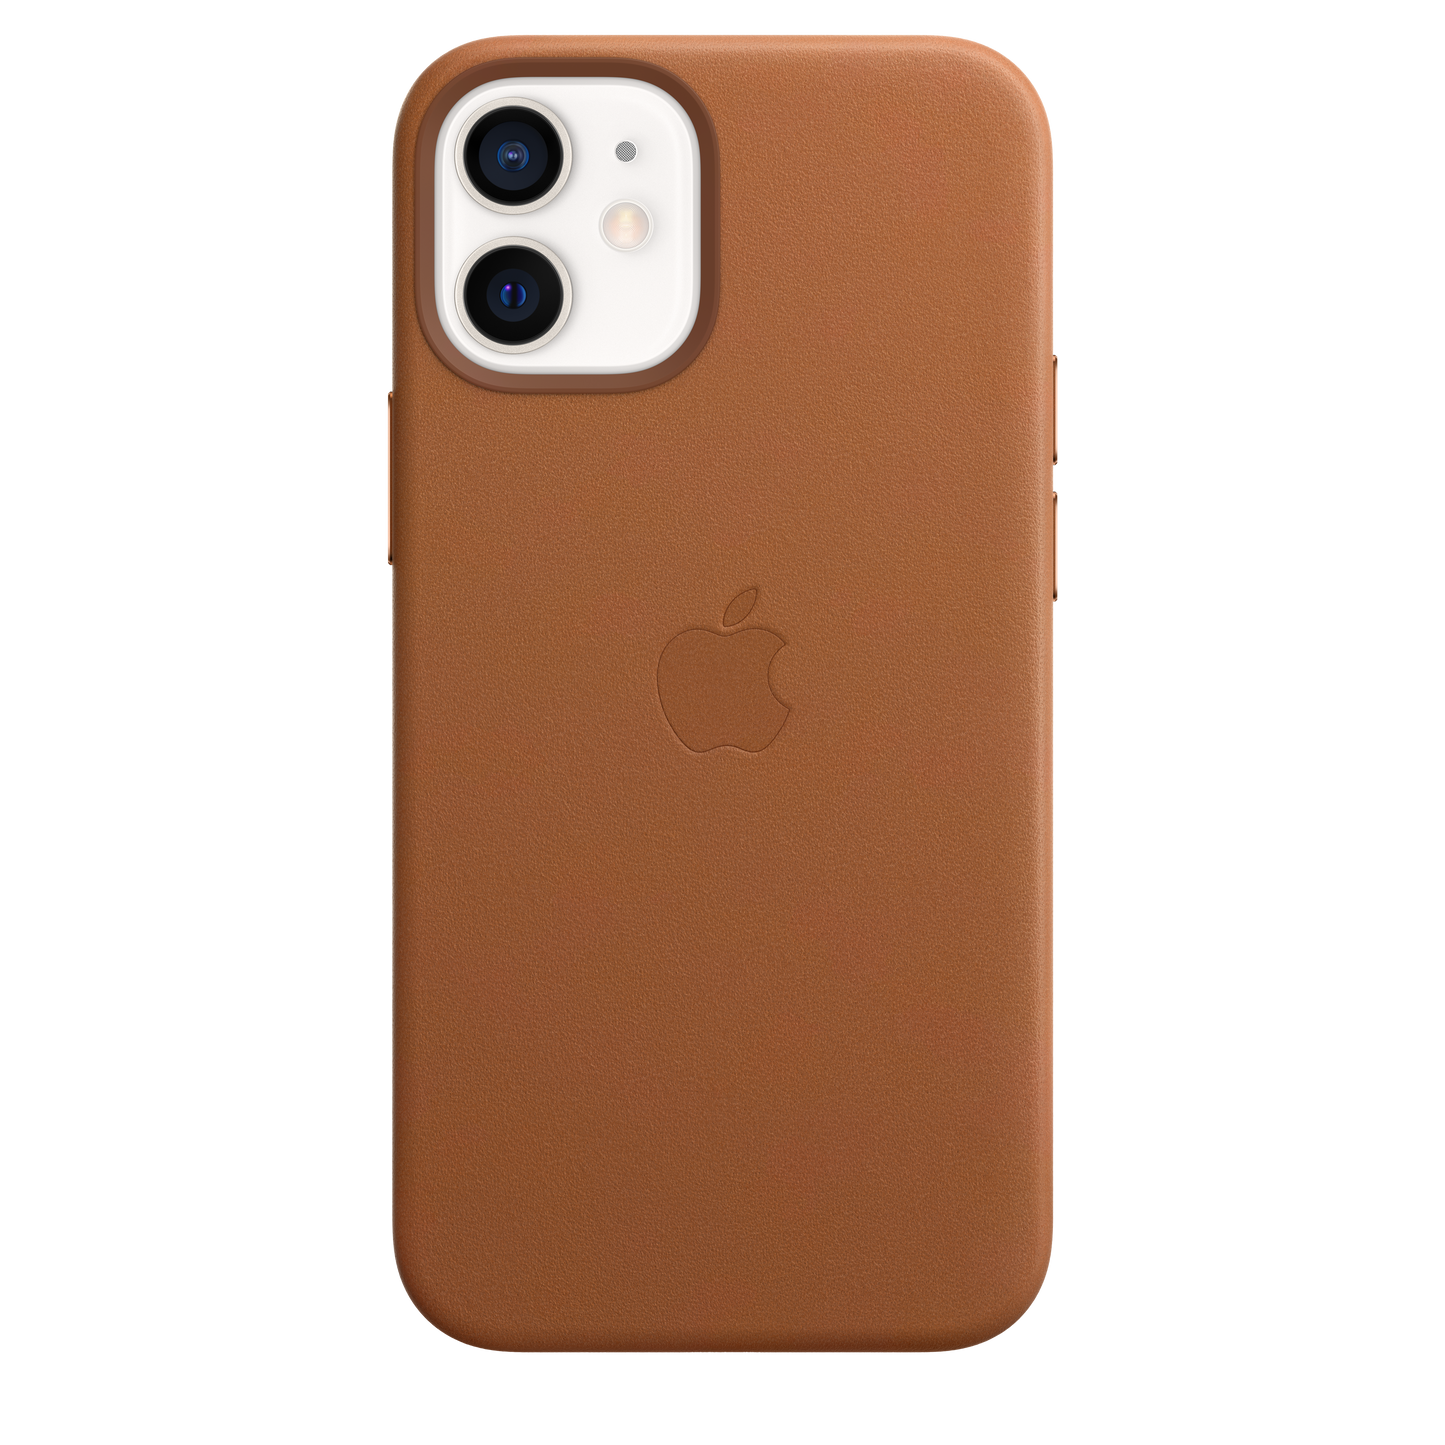 Funda de piel con MagSafe para el iPhone12 mini, Marrón caramelo - Rossellimac